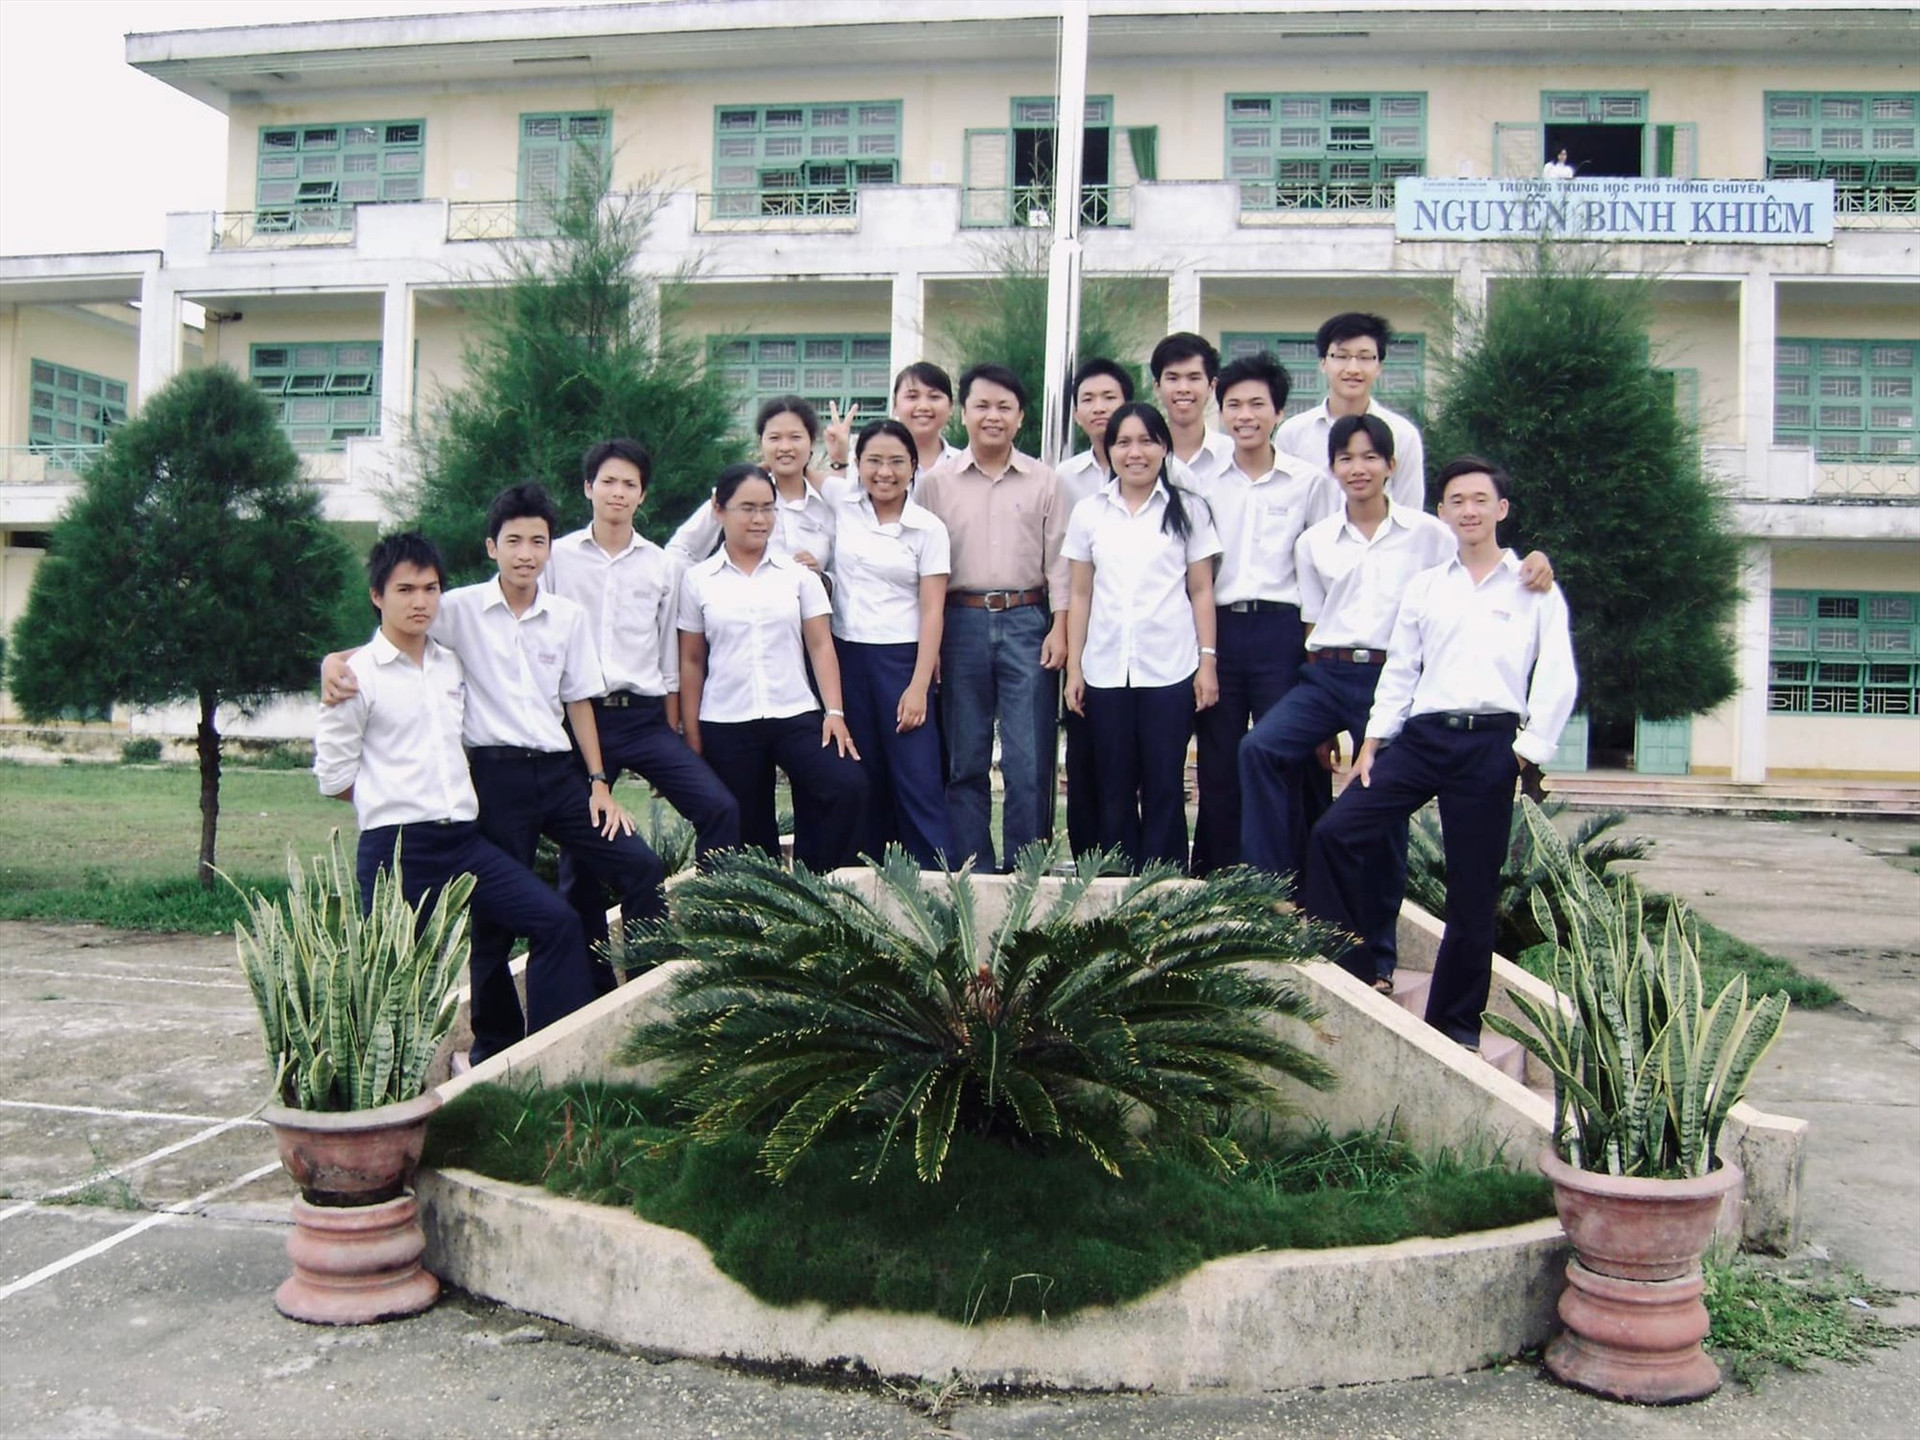 Những khóa đầu của Trường THPT Chuyên Nguyễn Bỉnh Khiêm tại ngôi trường cũ. Ảnh: T.L